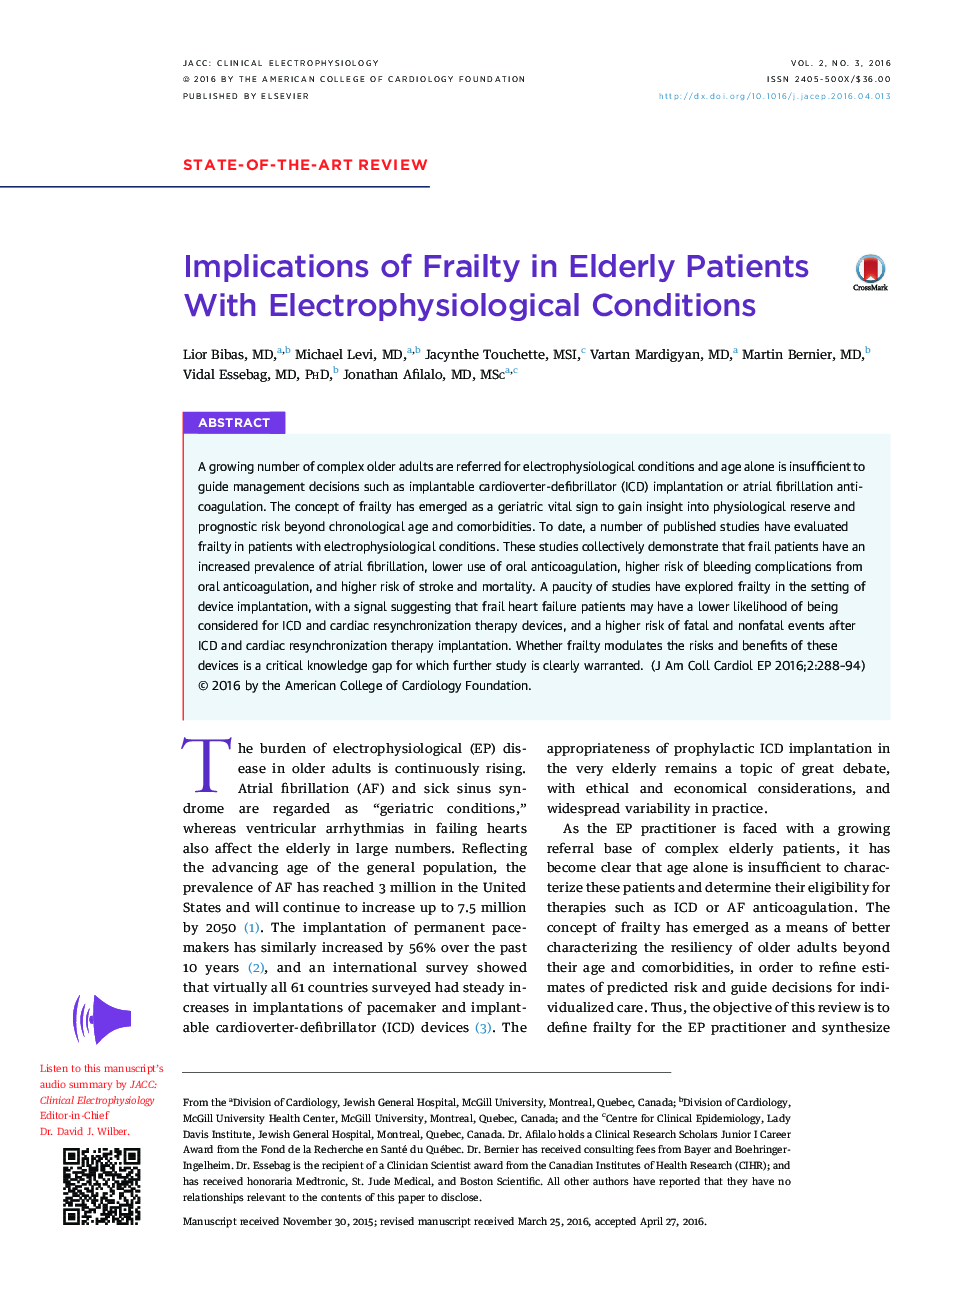 پیامدهای ناامیدی در بیماران سالمند با شرایط الکتروفیزیولوژیک 